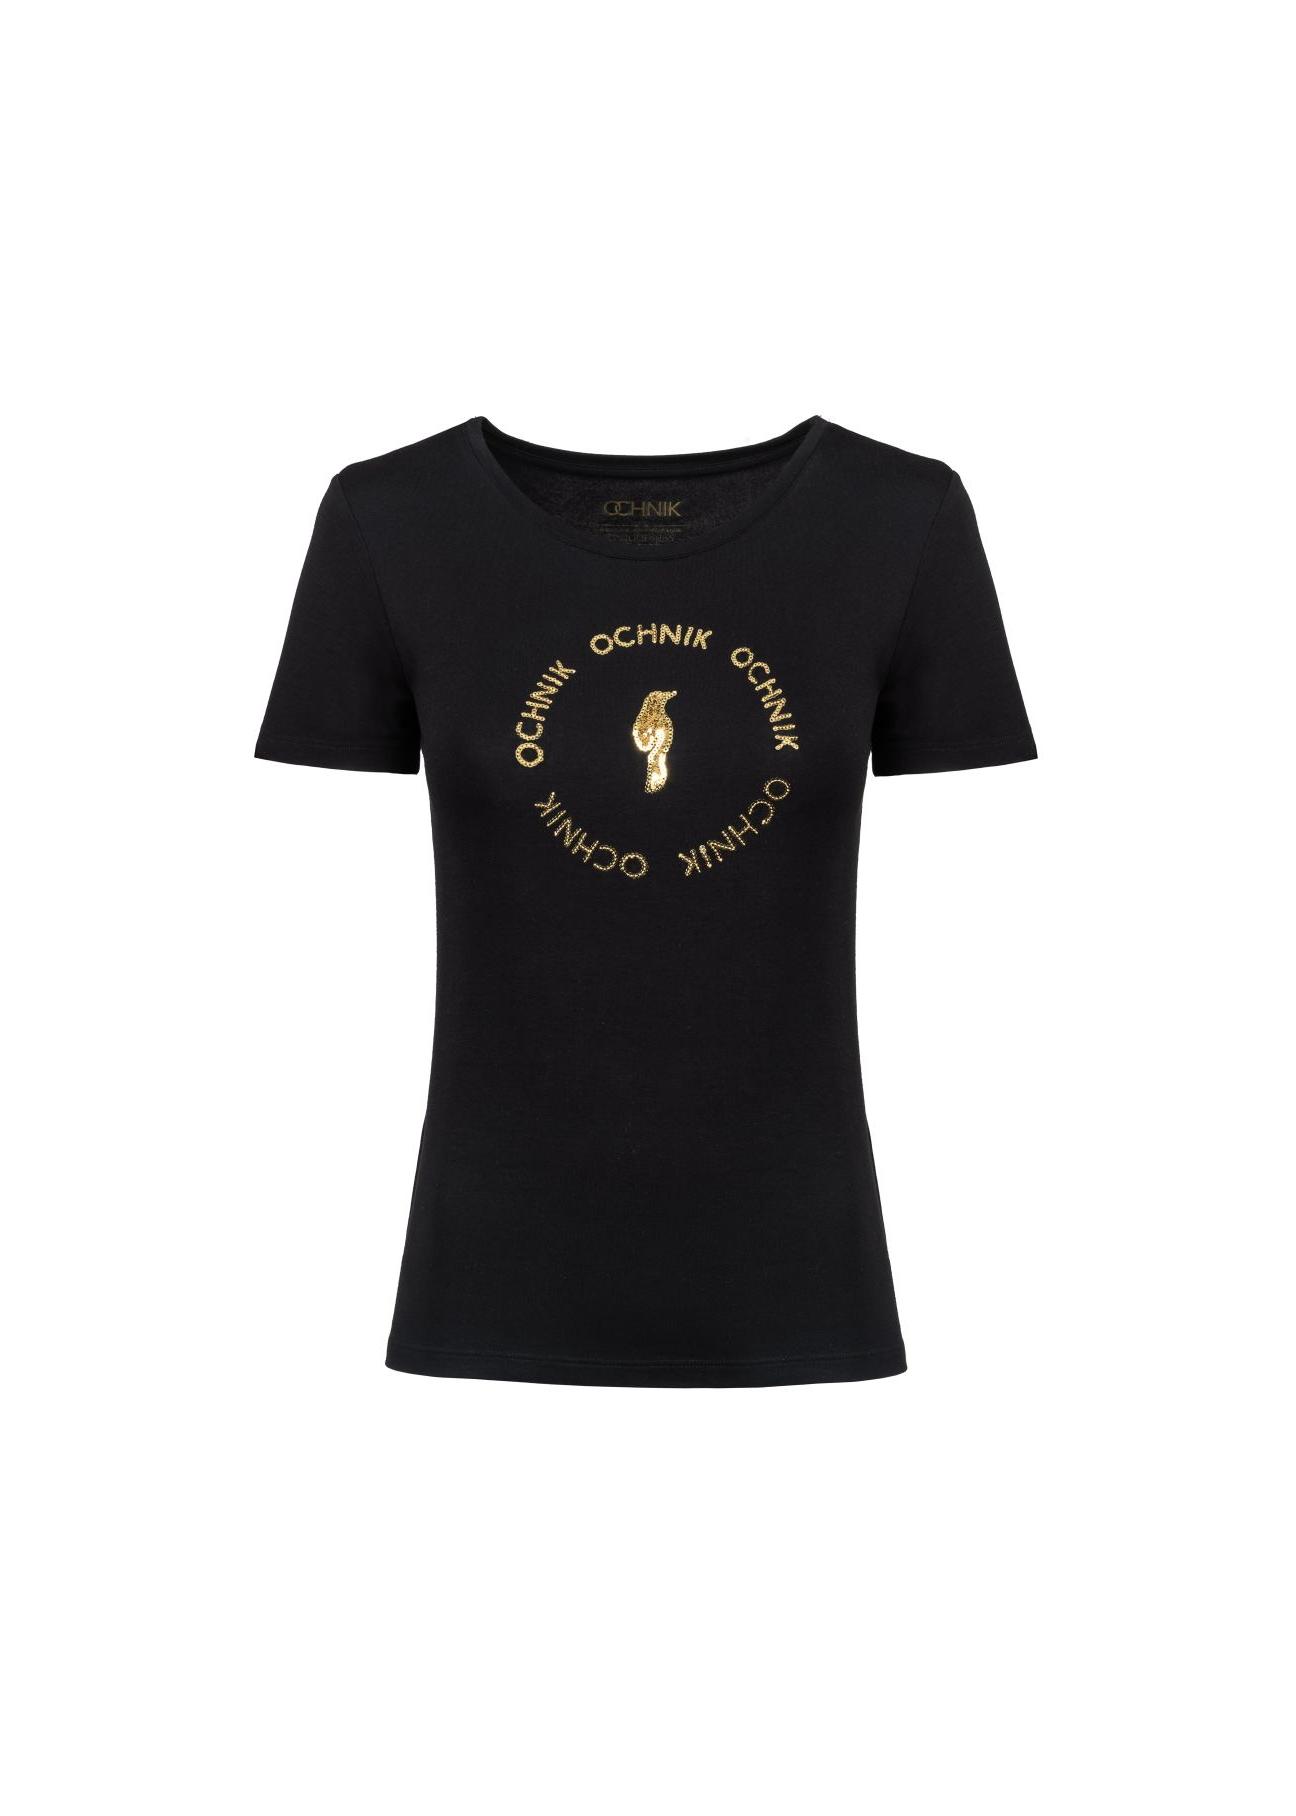 Czarny T-shirt damski z aplikacją TSHDT-0071A-99(Z23)